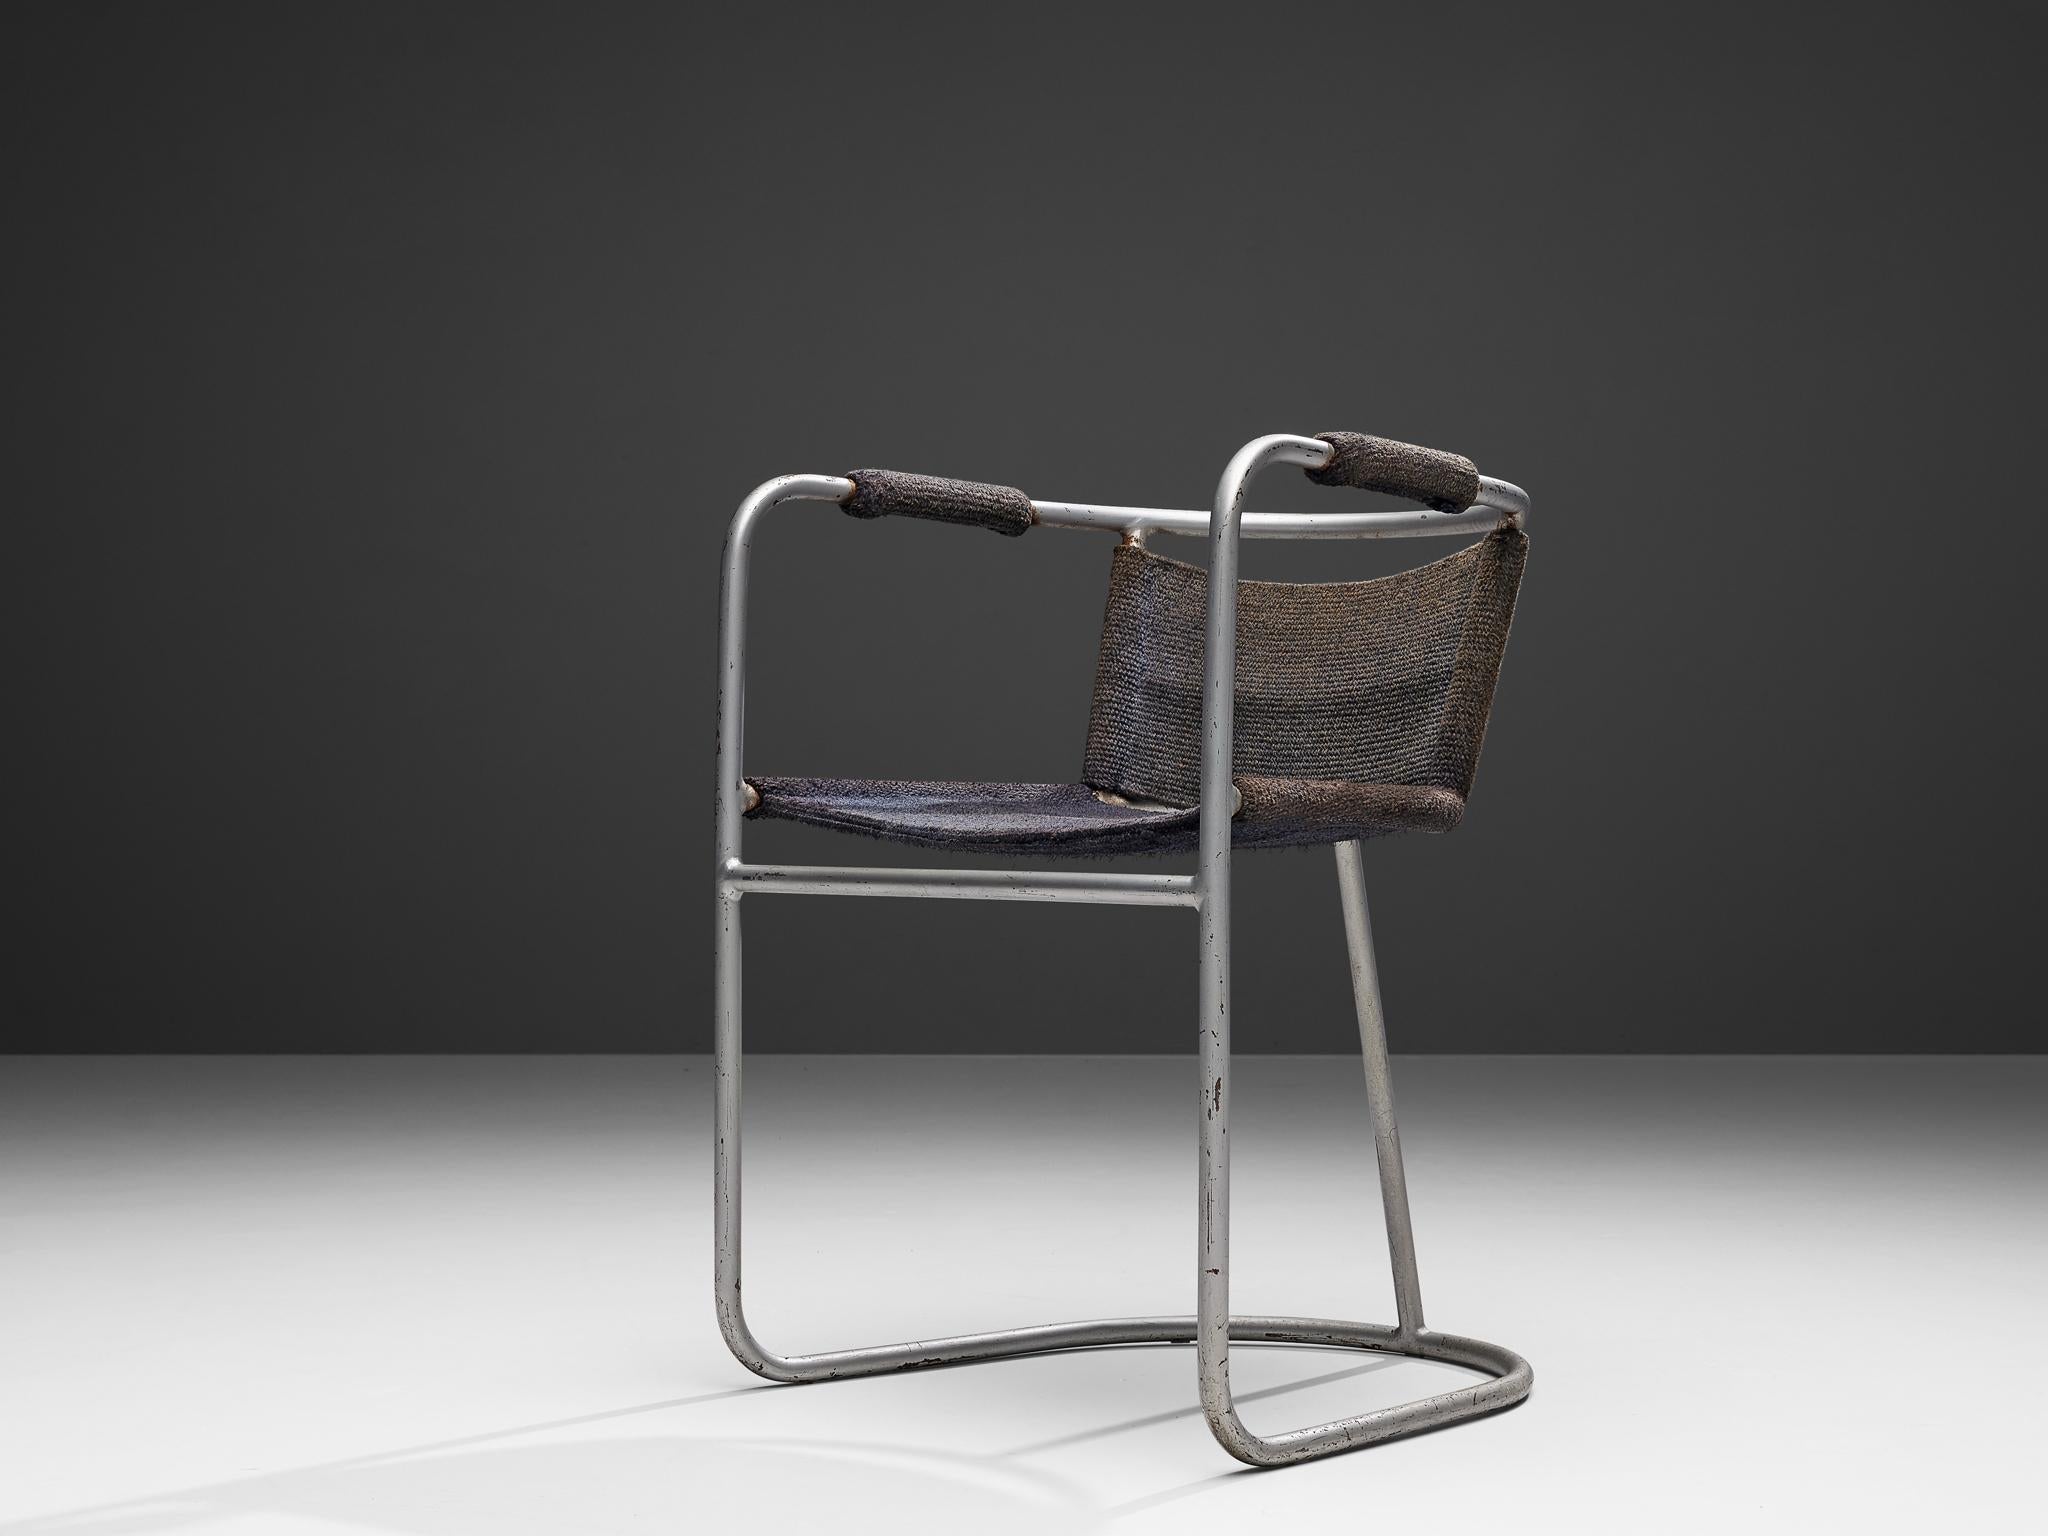 Bas Van Pelt, Sessel, verchromter Stahl, Sisal, Niederlande, 1930er Jahre

Dieser Sessel wurde von Bas Van Pelt entworfen und besteht aus einem gebogenen Metallrohrgestell. Diese frühe Version zeigt, dass die Entwicklung des Freischwingers noch ganz